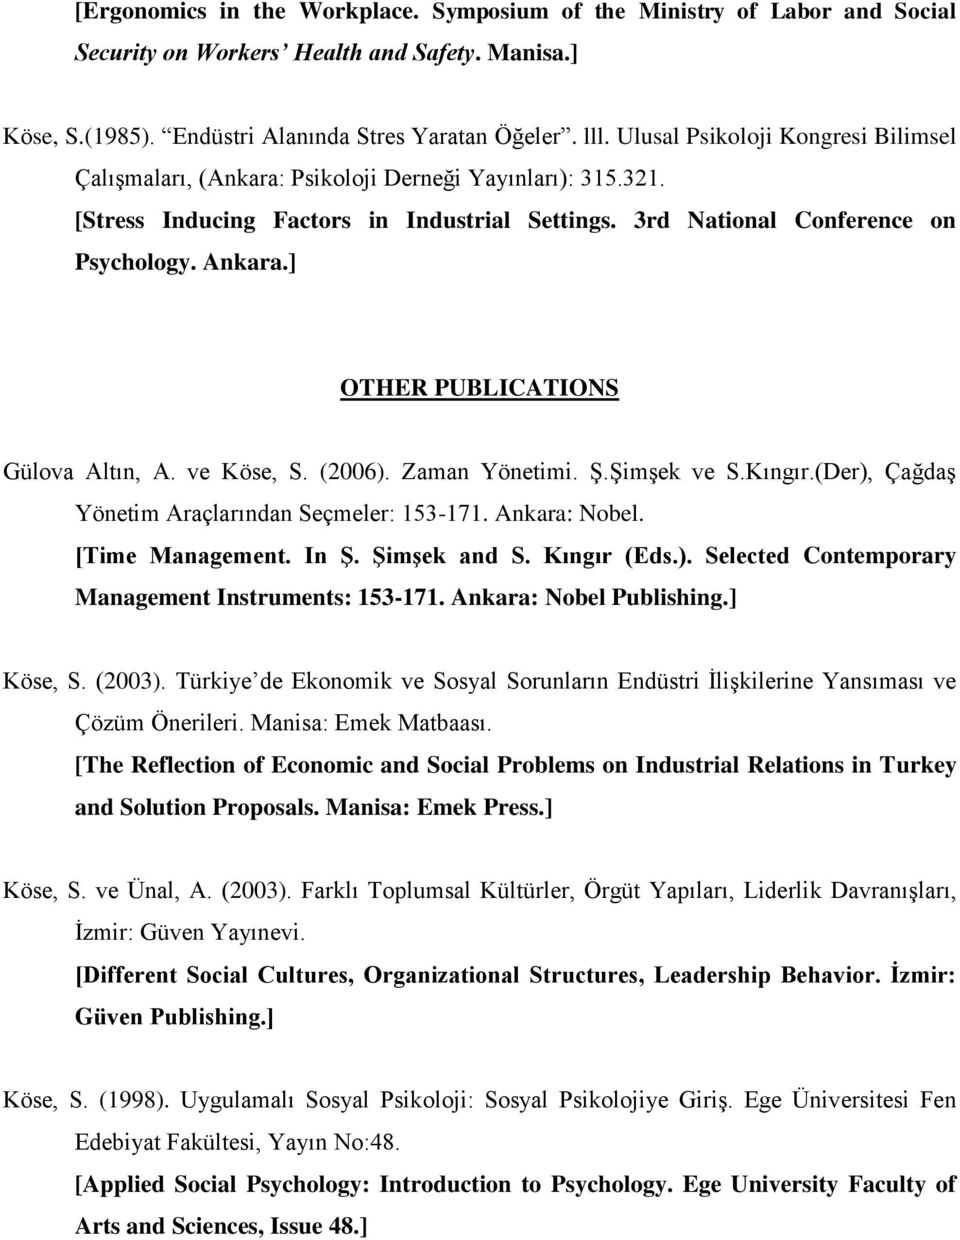 ] OTHER PUBLICATIONS Gülova Altın, A. ve Köse, S. (2006). Zaman Yönetimi. Ş.Şimşek ve S.Kıngır.(Der), Çağdaş Yönetim Araçlarından Seçmeler: 153-171. Ankara: Nobel. [Time Management. In Ş.